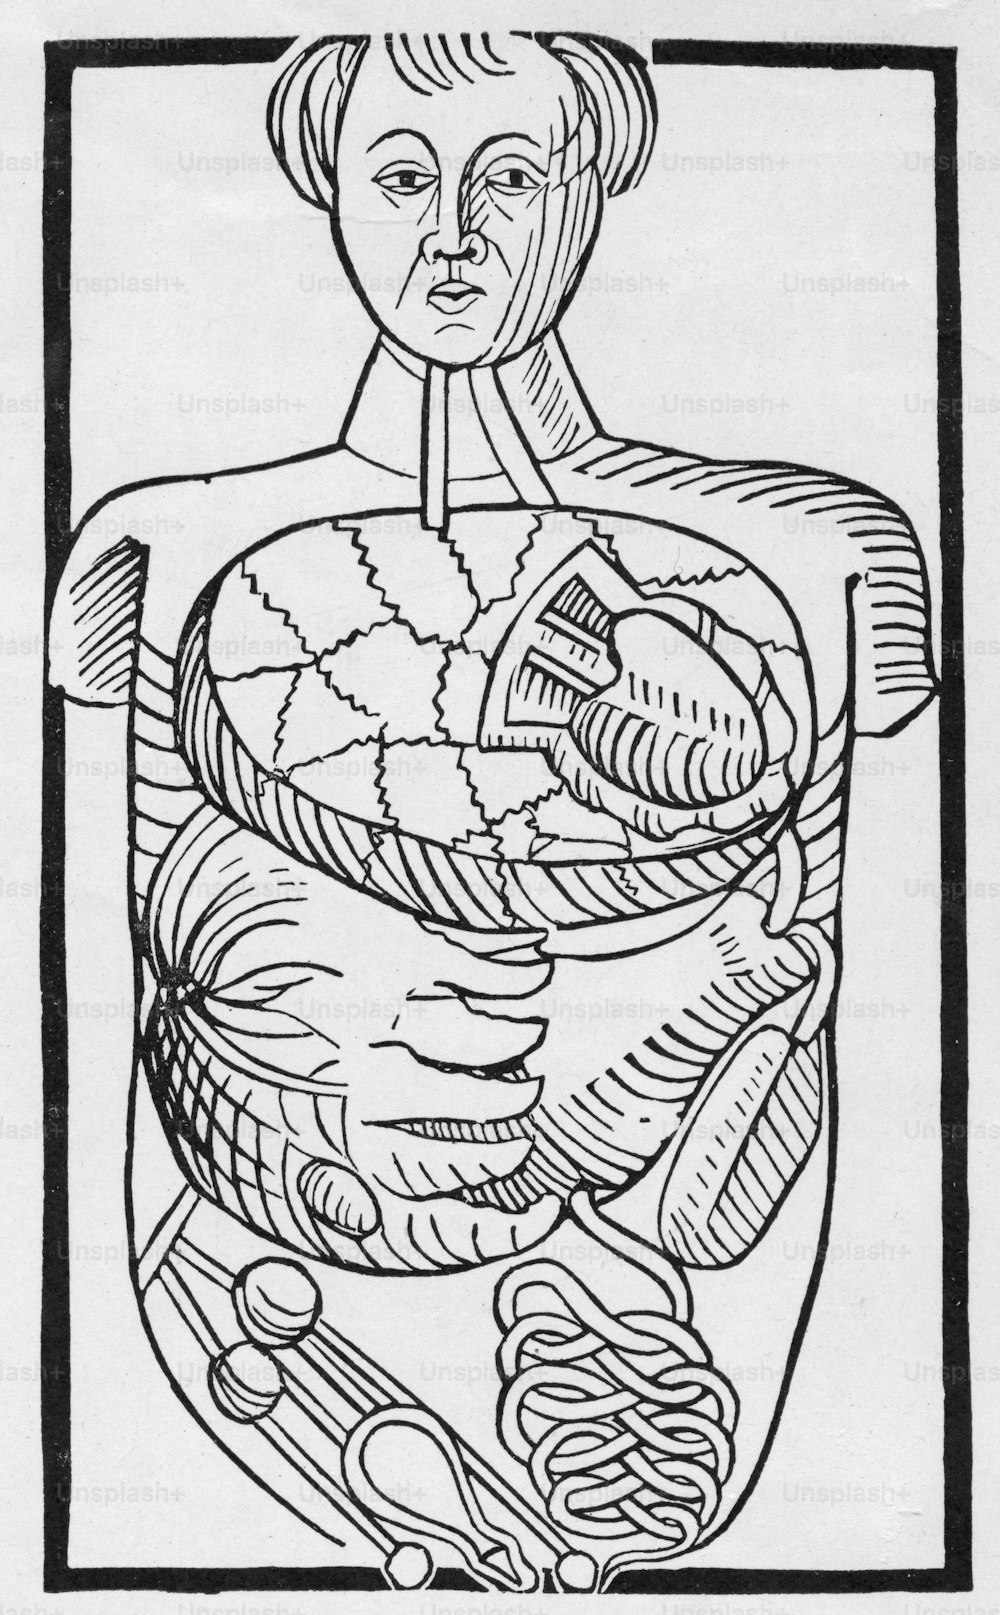 人間の腸の図。マグヌス・フントの「Antropologium de Hominis Dignitate, Natura et Proprietatibus」より「Figura de Situ Viscerum」、ライプツィヒ、1501年。 (写真提供:Hulton Archive/Getty Images)